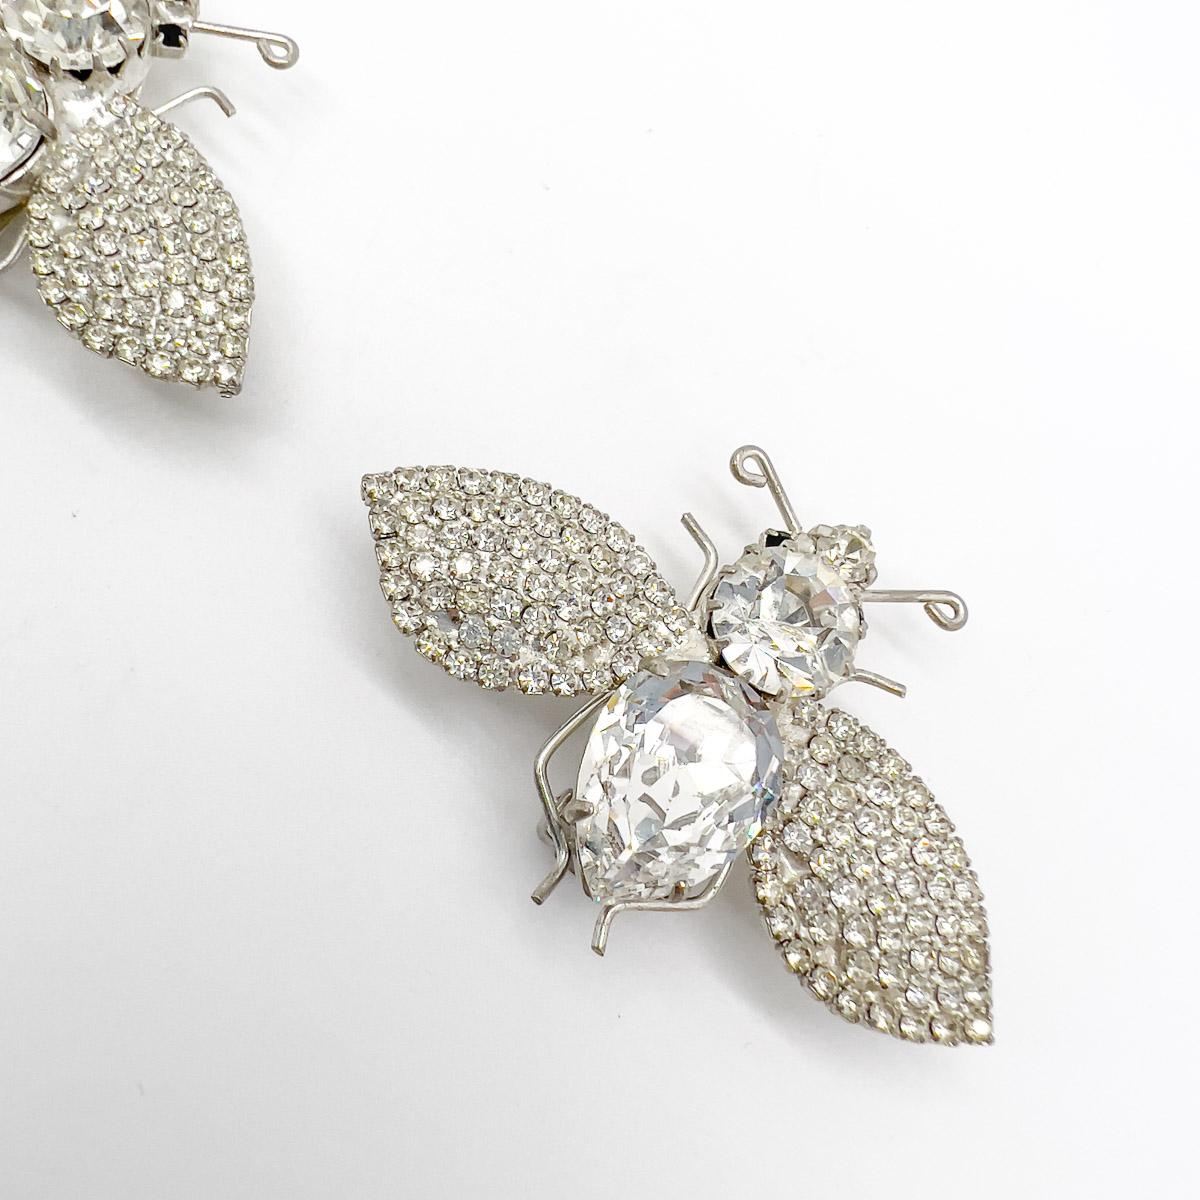 Ein wundervolles Paar Vintage Crystal Bee Ohrringe mit fabelhaften großen Kristallen im Phantasieschliff und Chatons im Pavee-Set. Diese coolen Schmuckstücke sind ein göttliches Finish für Ihren Look.
Eine unsignierte Schönheit. Ein seltener Schatz.